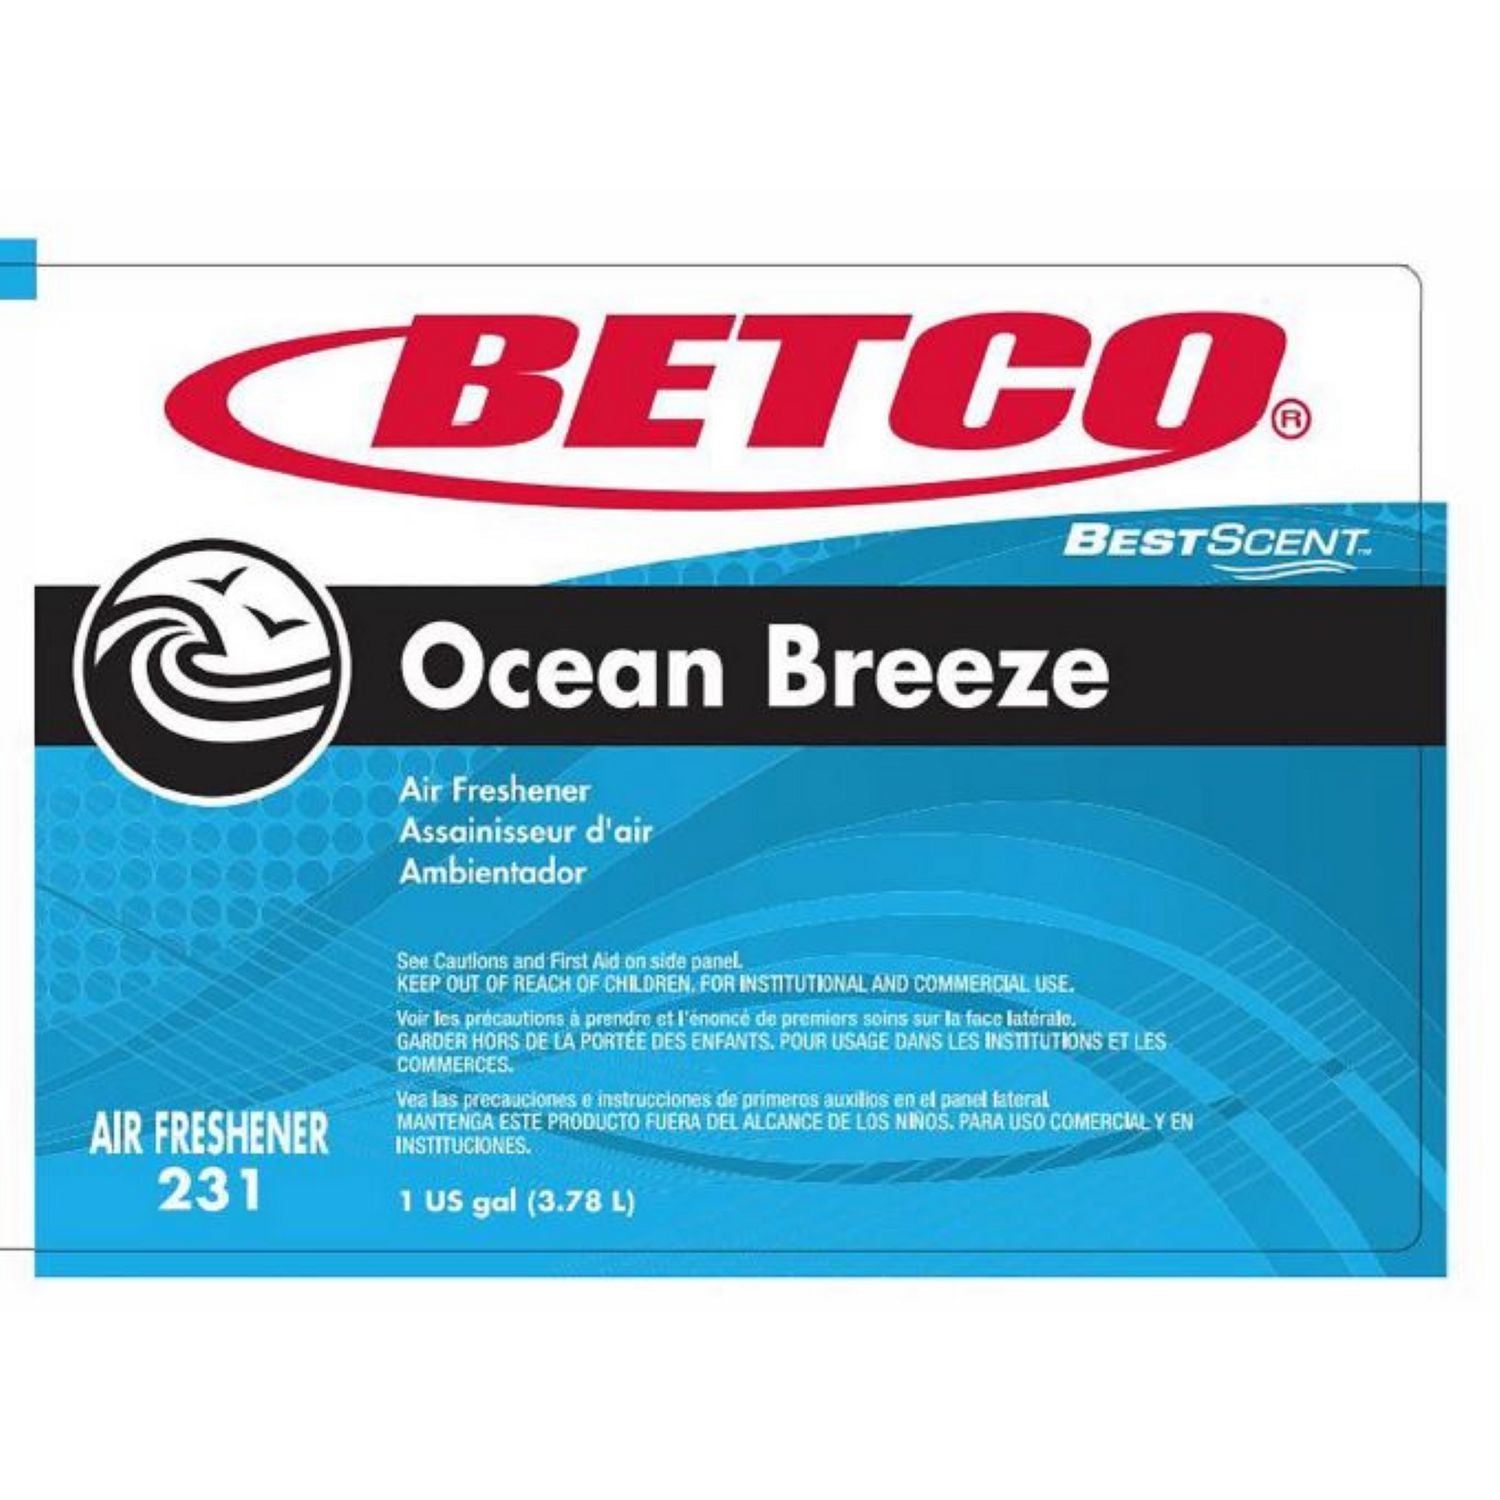 bestscent-ocean-breeze-deodorizer-ocean-breeze-scent-1-gal-bottle-4-carton_bet2310400 - 2